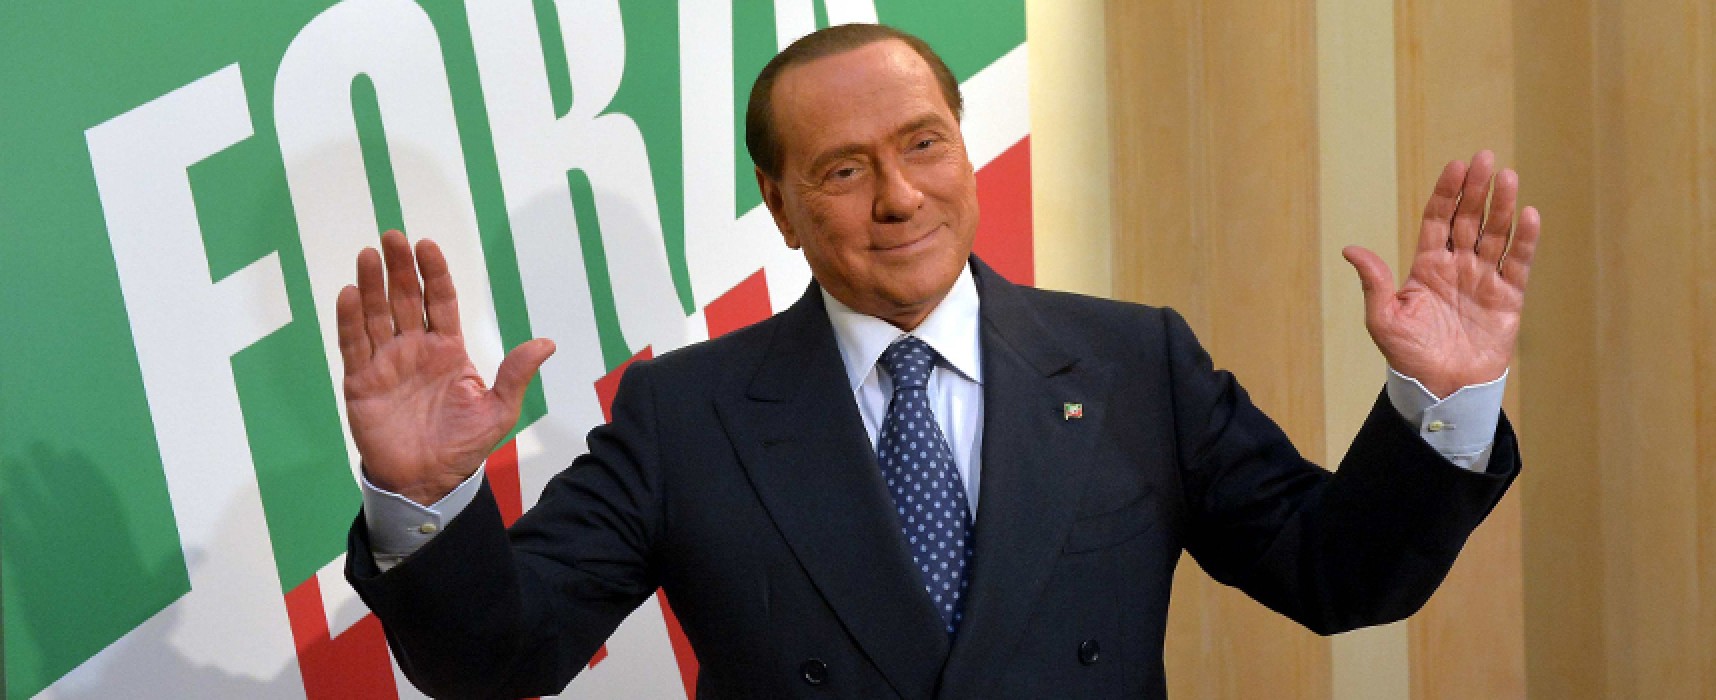 Oggi lutto nazionale per la morte di Silvio Berlusconi: cosa è previsto